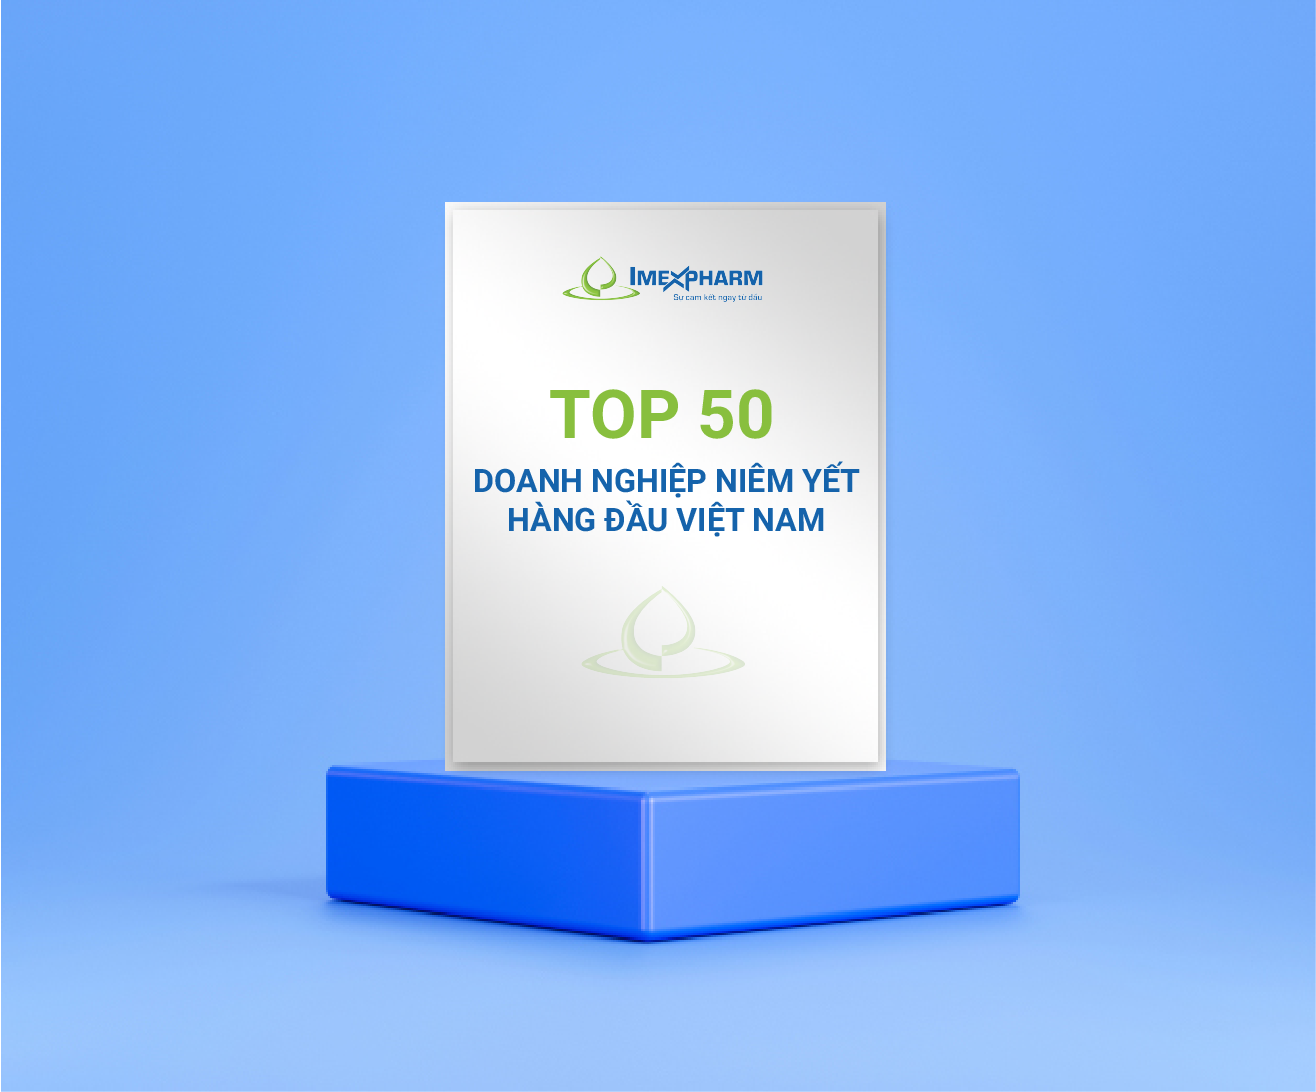 “Top 50 Doanh nghiệp niêm yết hàng đầu Việt Nam”